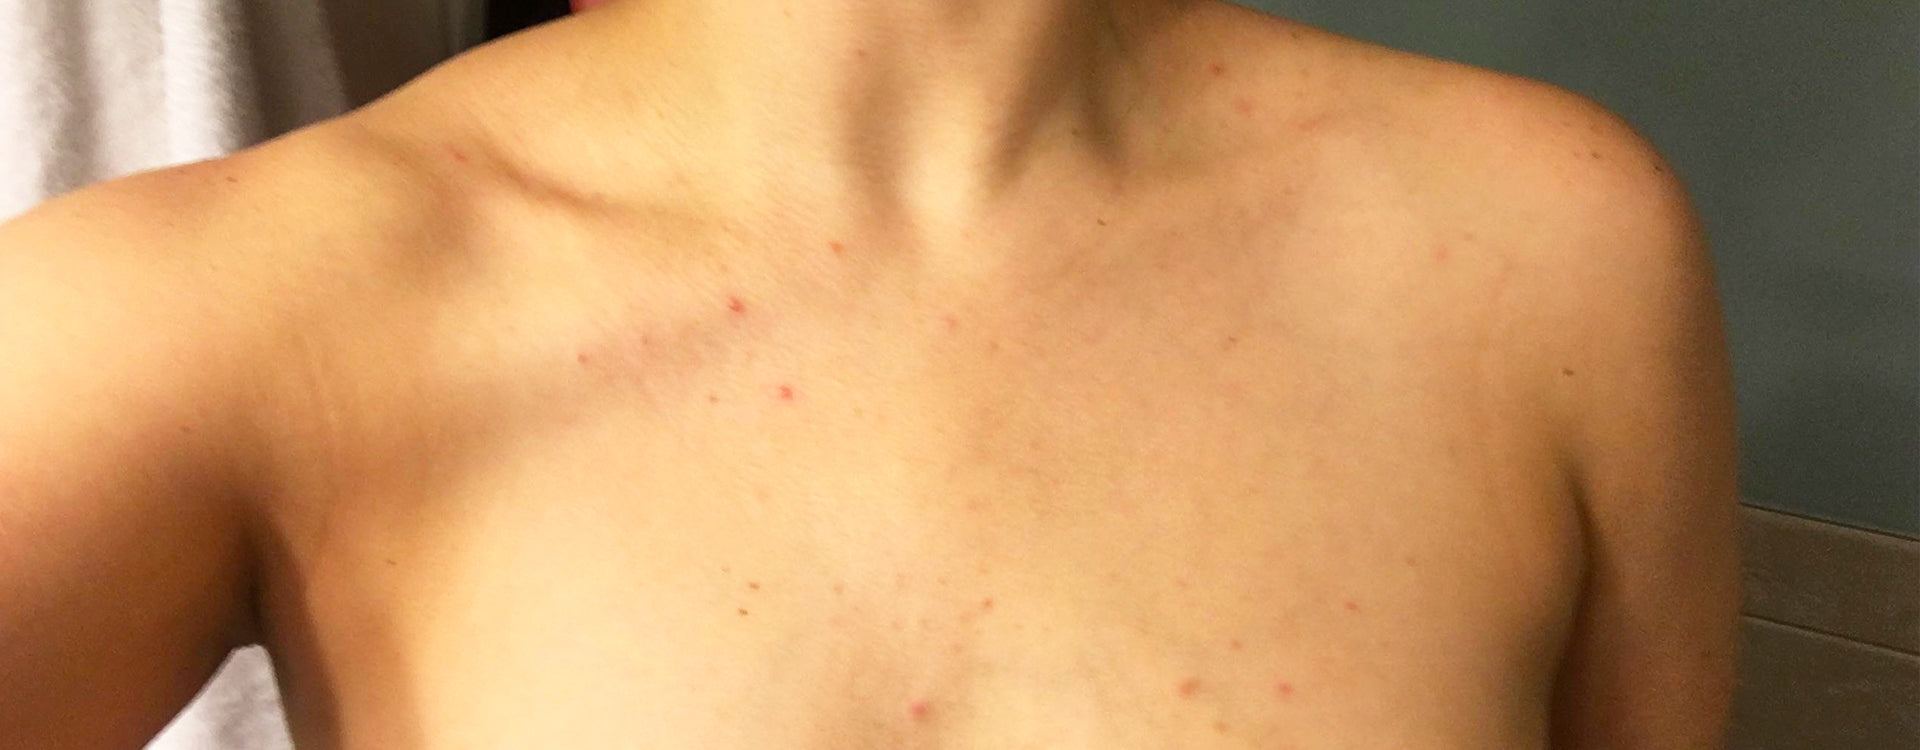 4 choses à savoir pour se débarrasser de son acné sur la poitrine ...